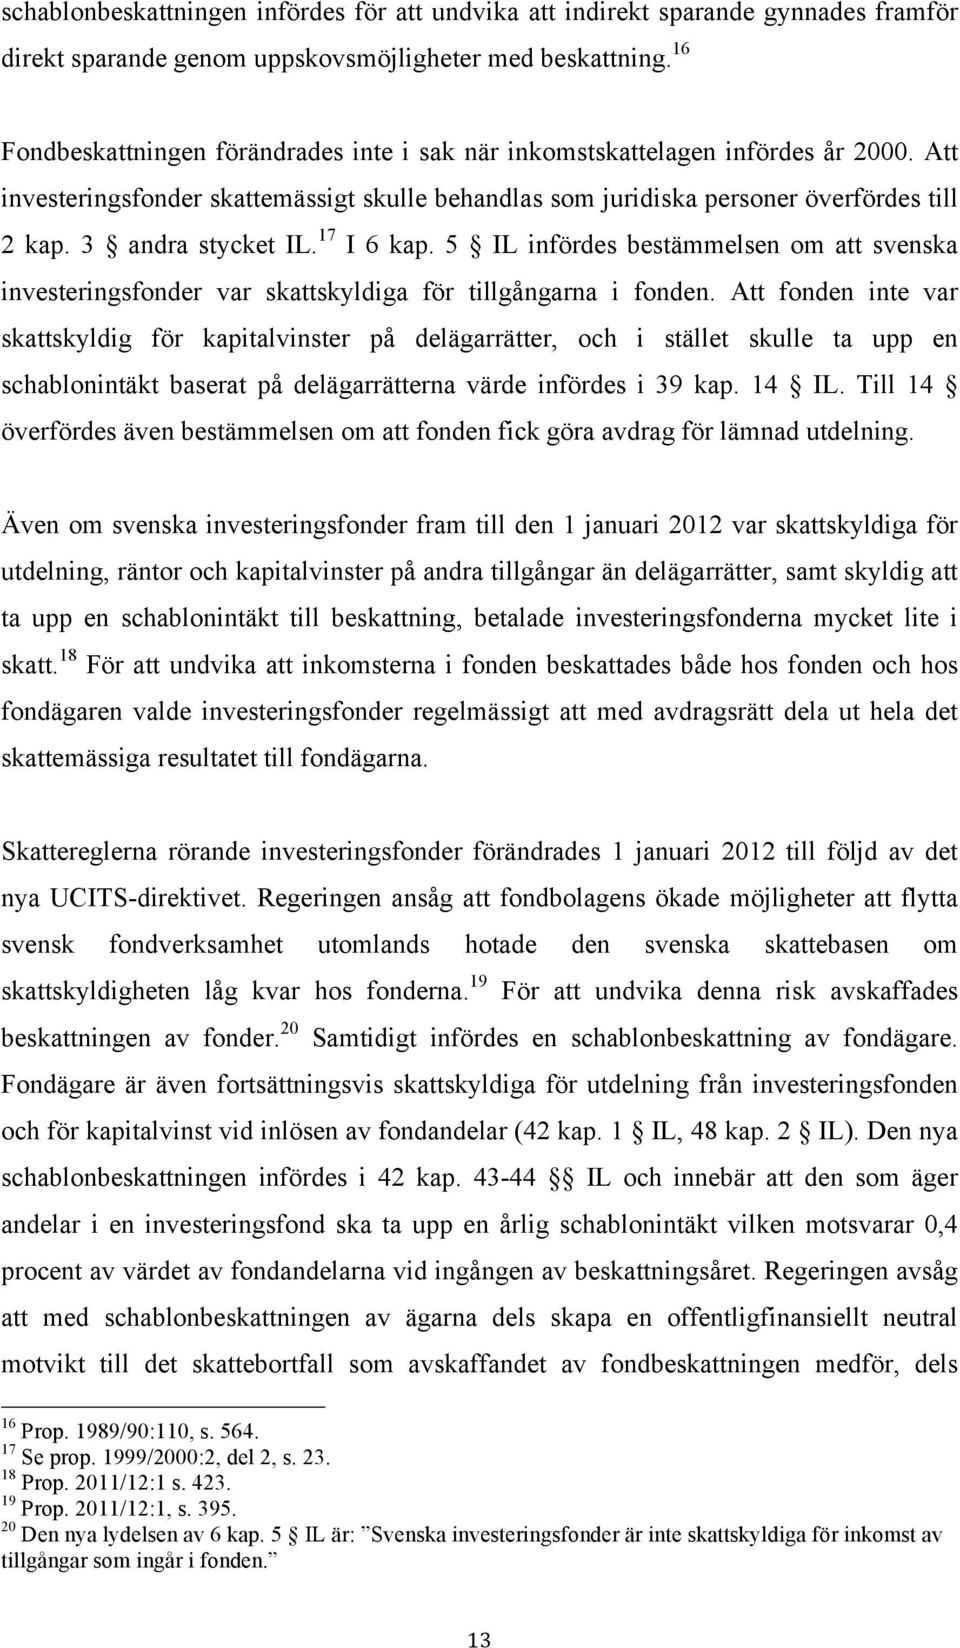 3 andra stycket IL. 17 I 6 kap. 5 IL infördes bestämmelsen om att svenska investeringsfonder var skattskyldiga för tillgångarna i fonden.